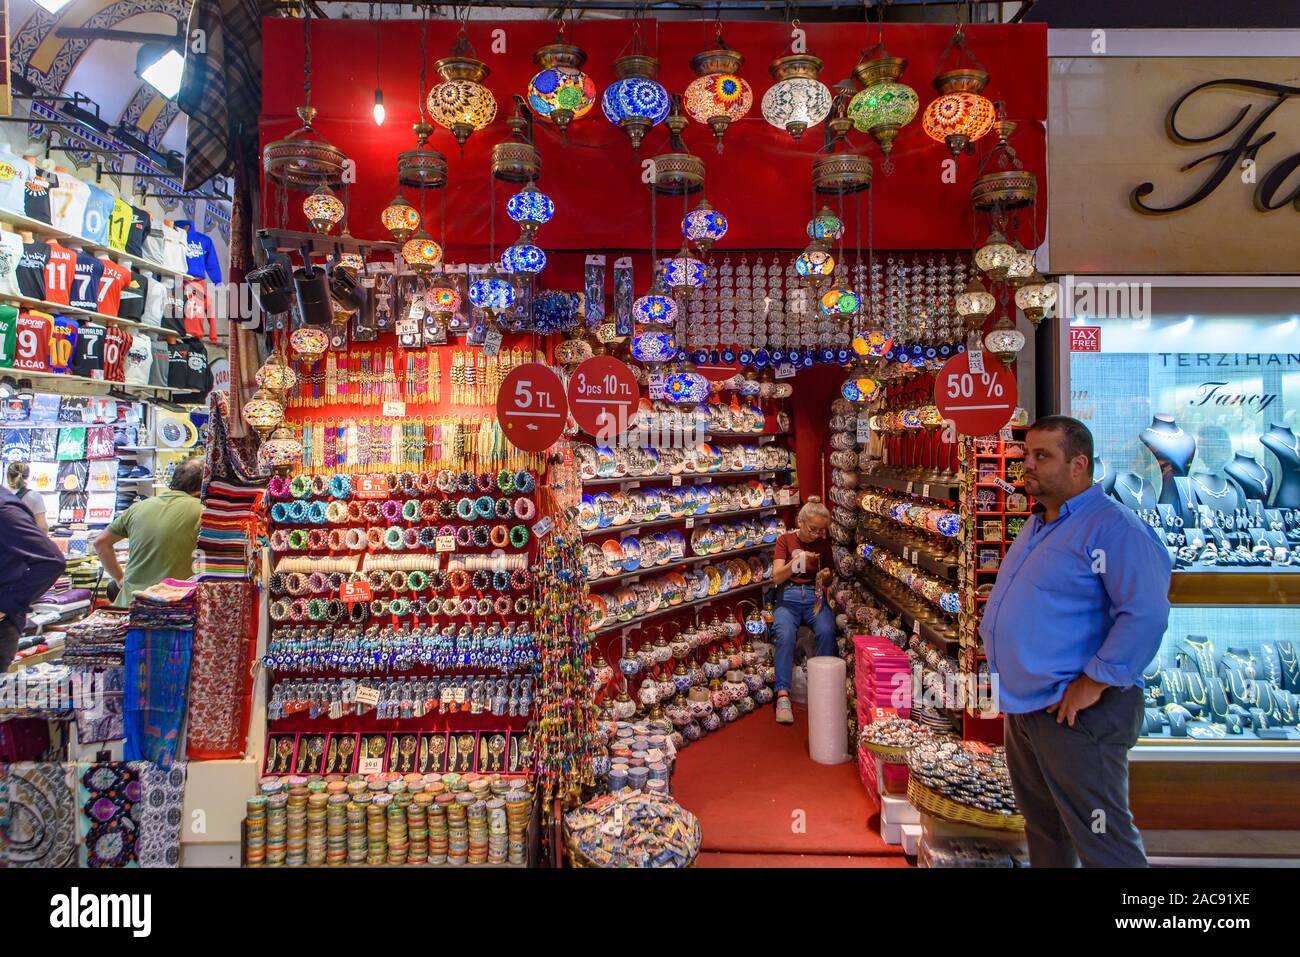 Das türkische Mosaik Lampe/Osmanischen licht Geschäfte innerhalb der Große Basar in Istanbul, Türkei, eine der größten und ältesten überdachten Märkte der Welt Stockfoto